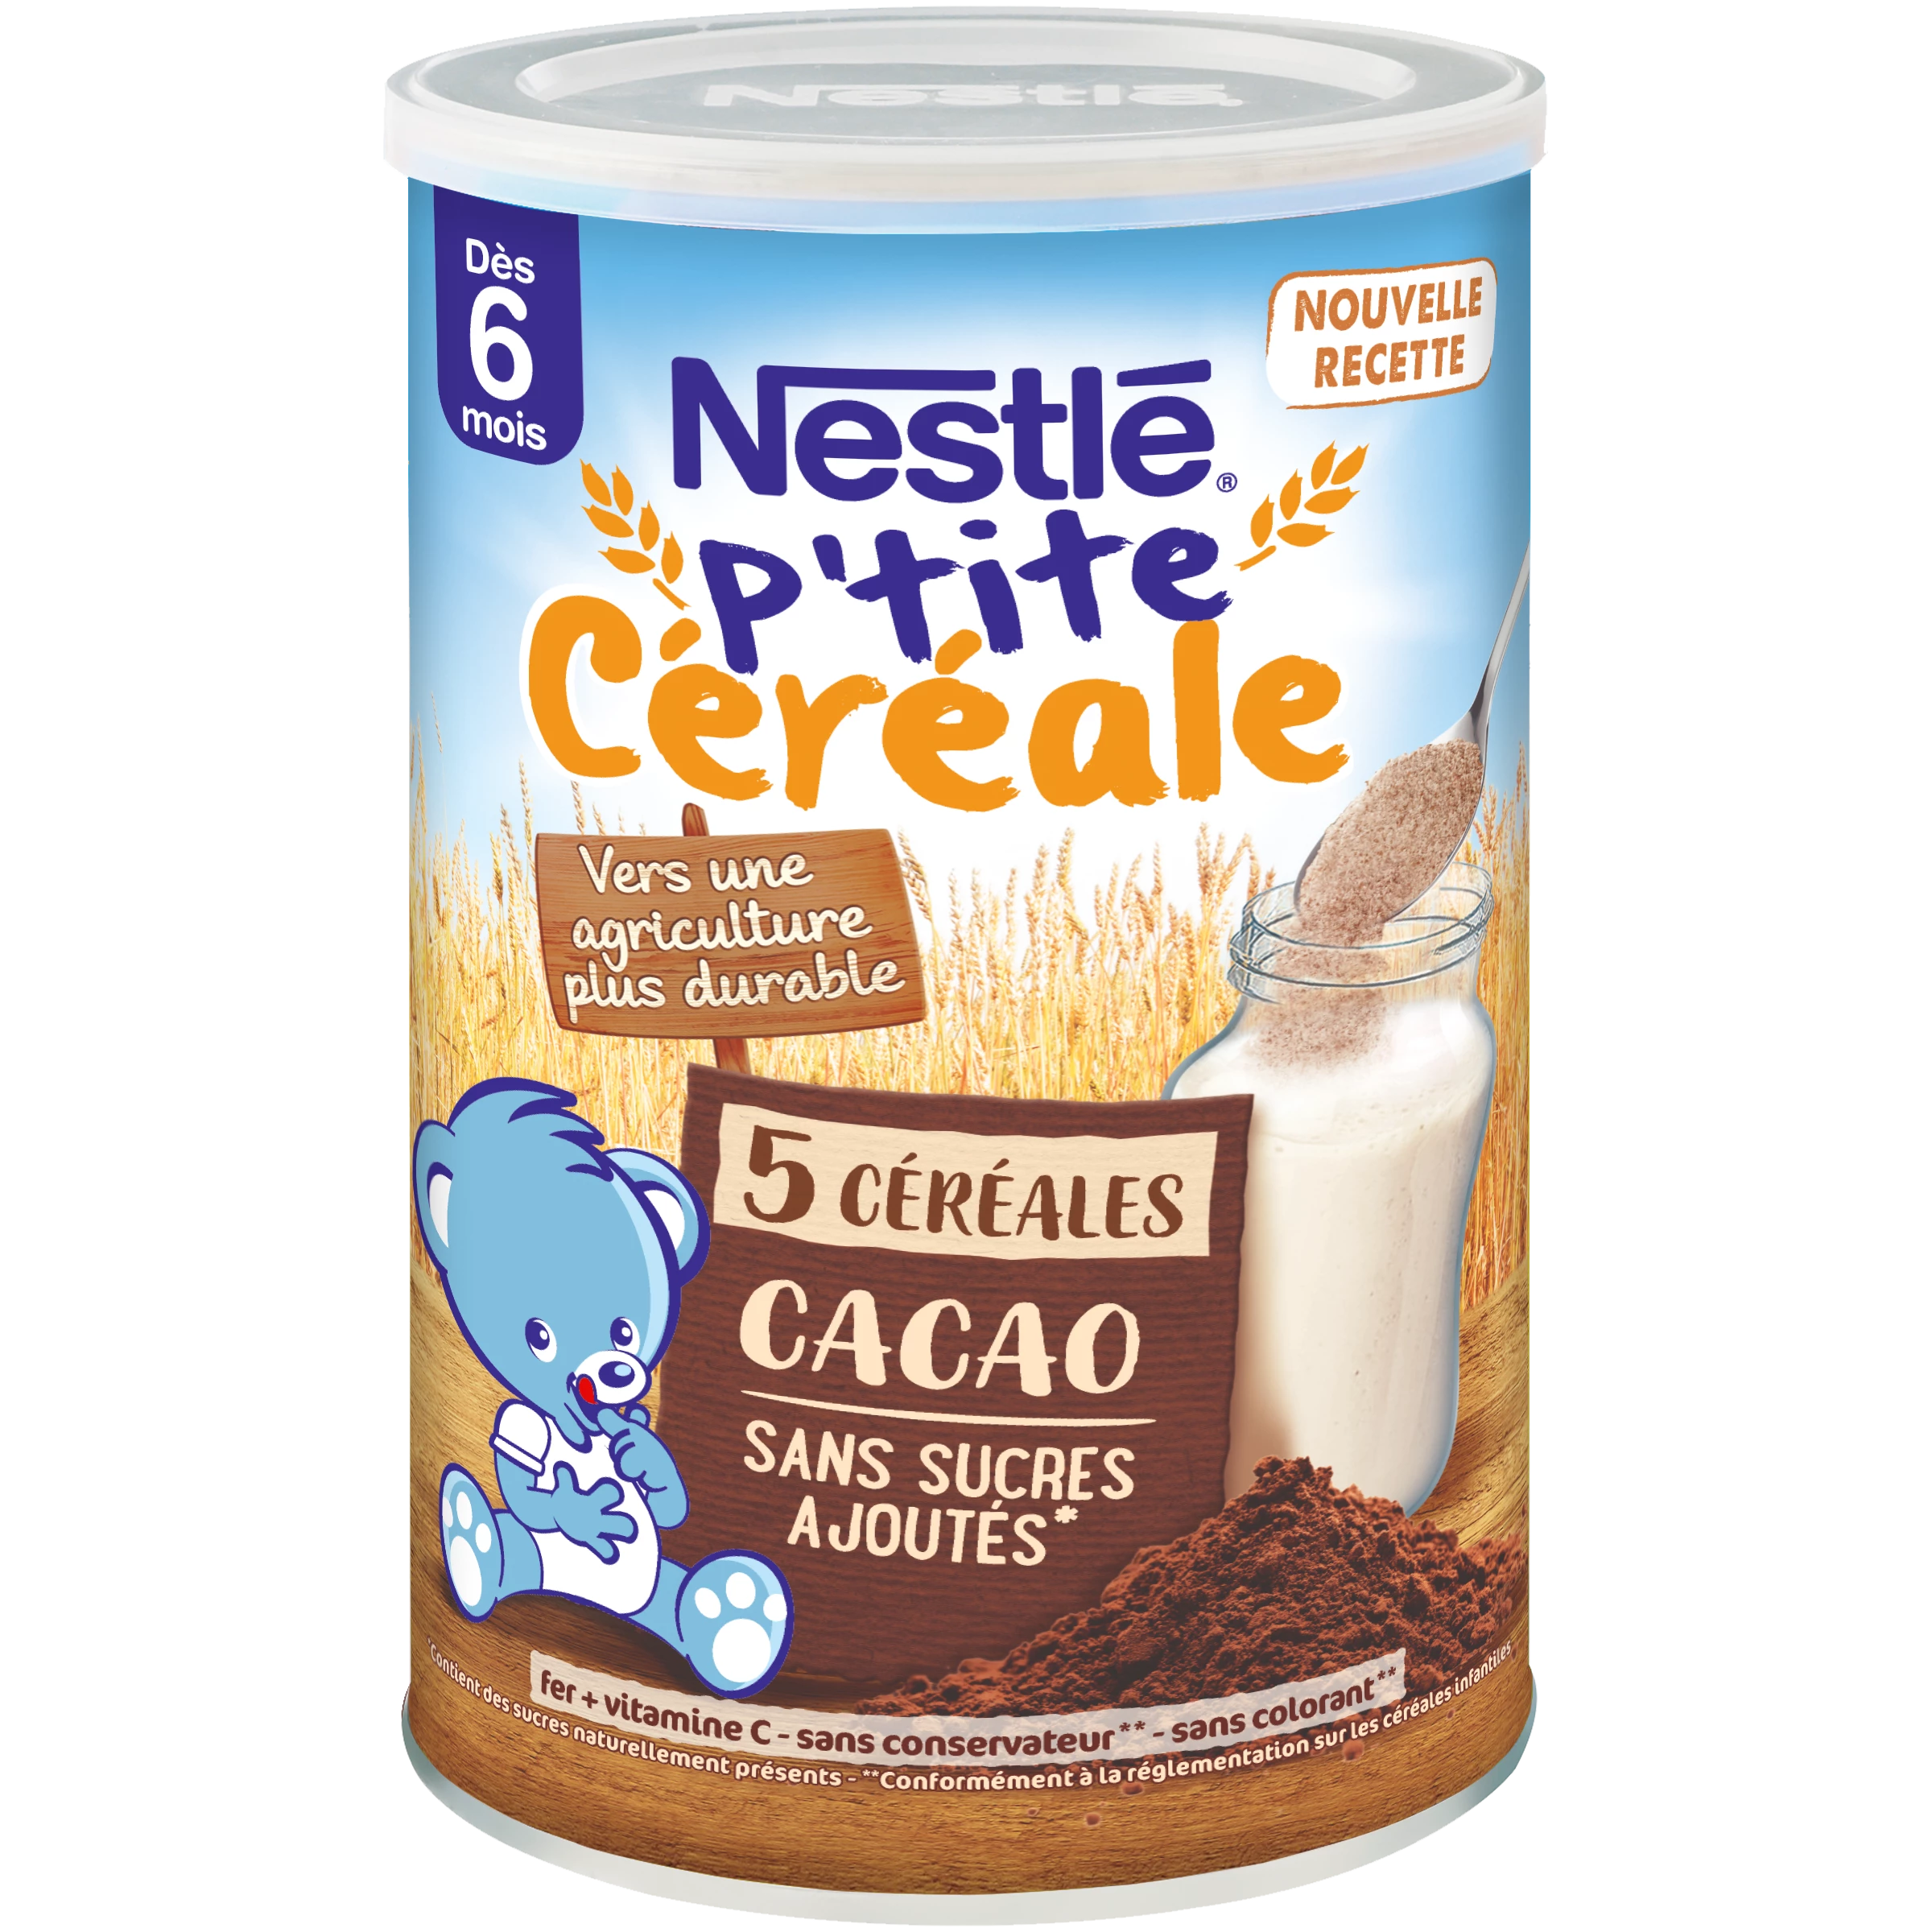 P'tite Cereali Cacao 415g - NESTLÉ